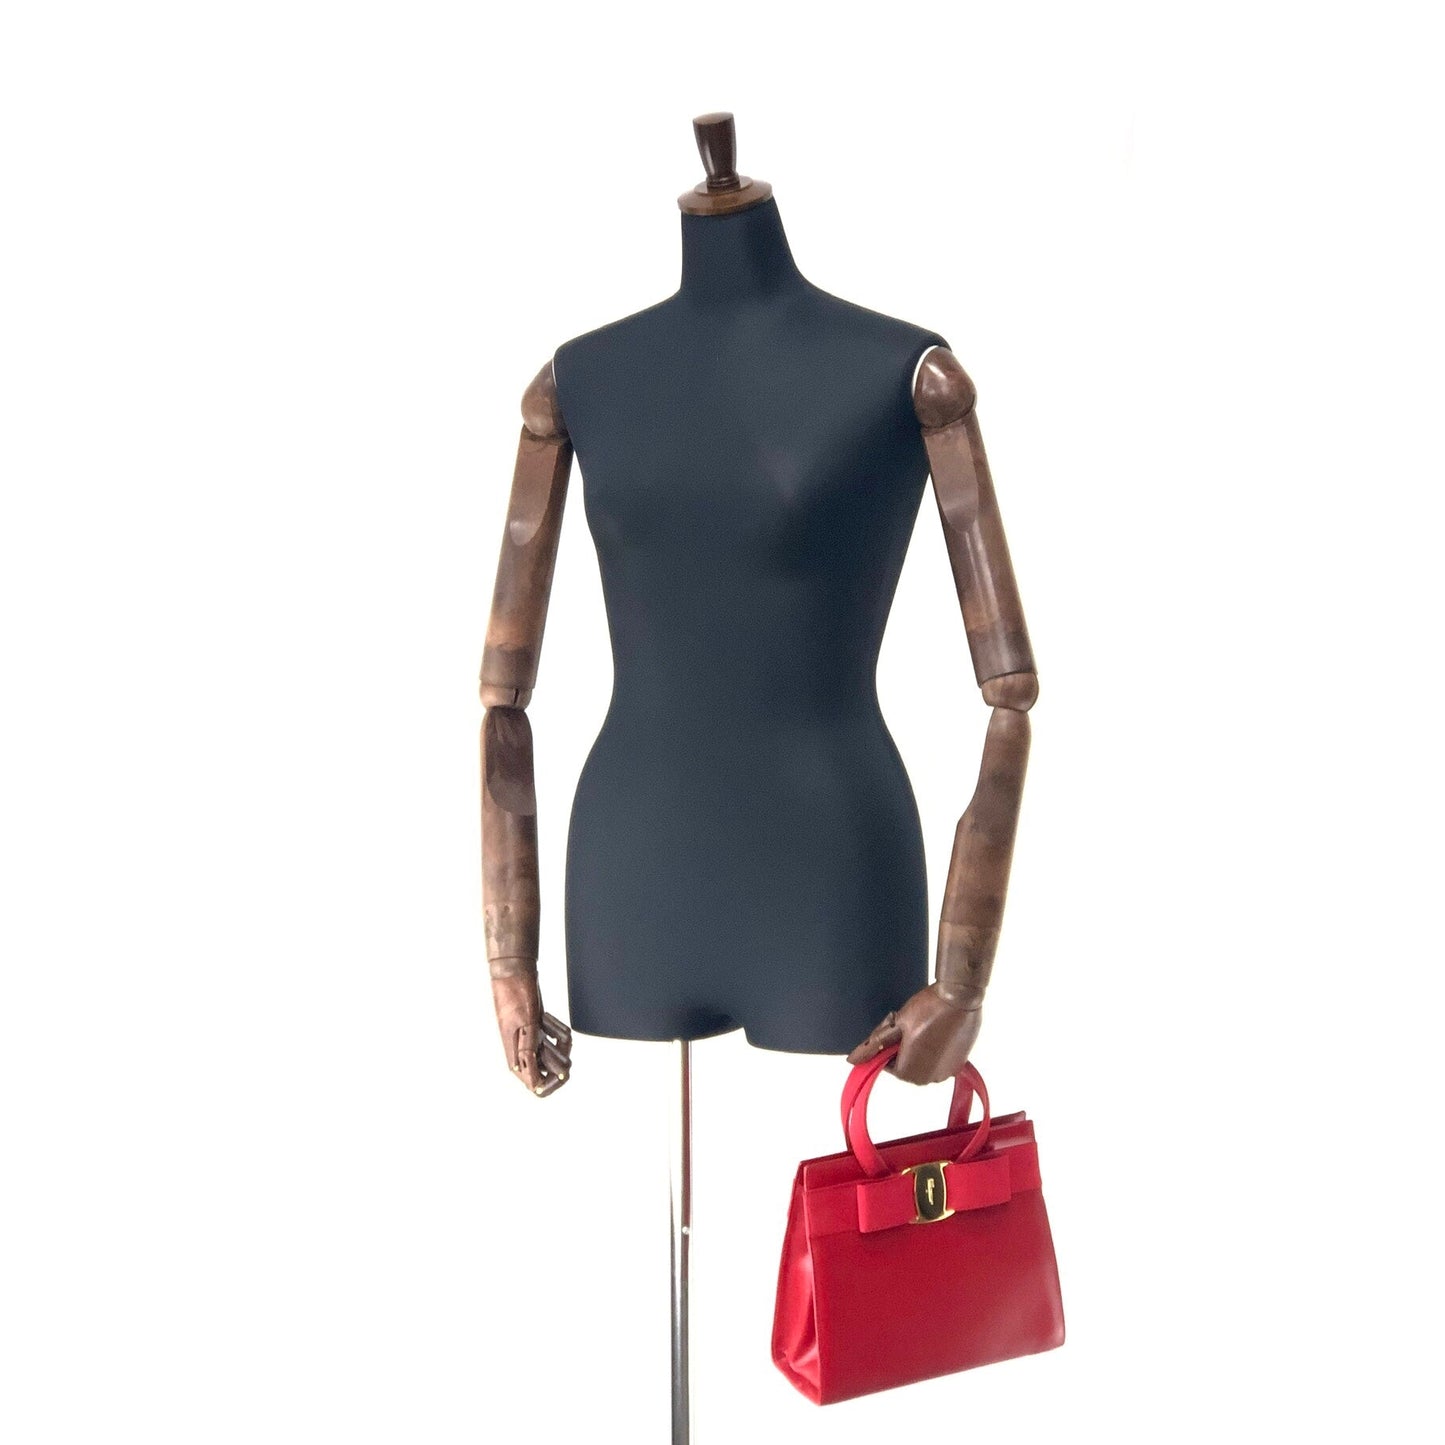 Salvatore Ferragamo Vala Ribbon Leather 2WAY Handbag Shoulder Bag Red vintage Old ihppdc